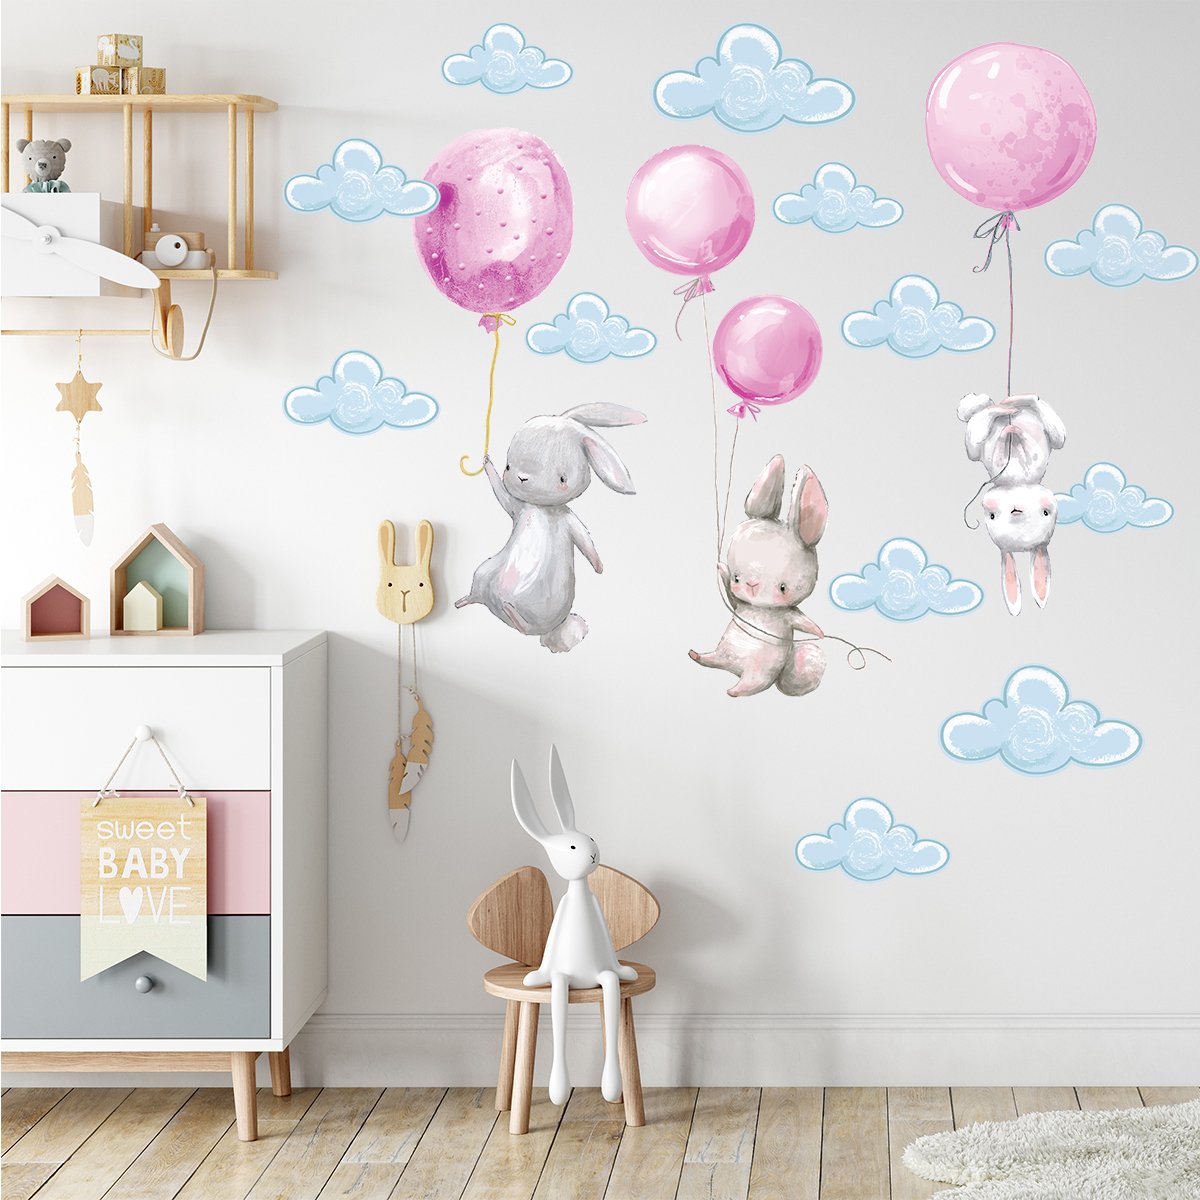 Naklejki króliki i różowe balony#kolor_rozowy